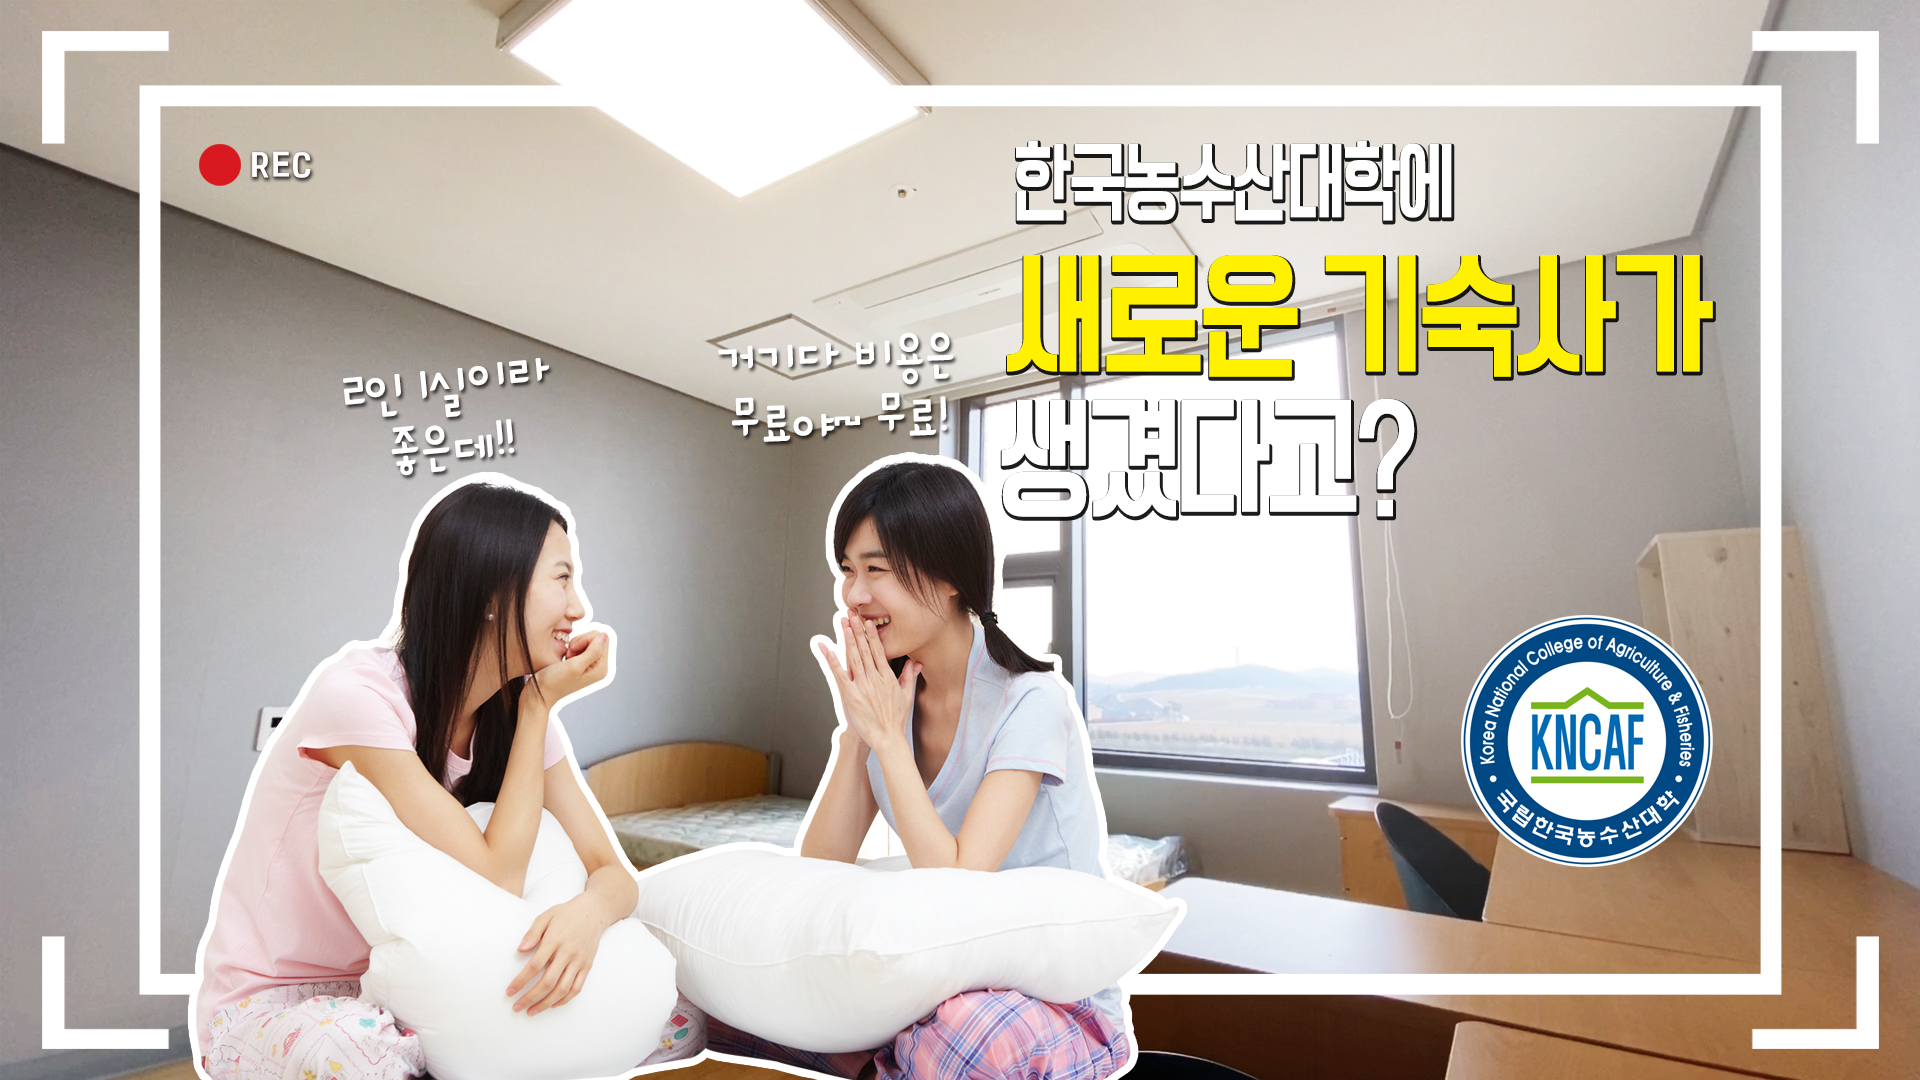 한국농수산대학의 새로운 기숙사를 소개합니다.